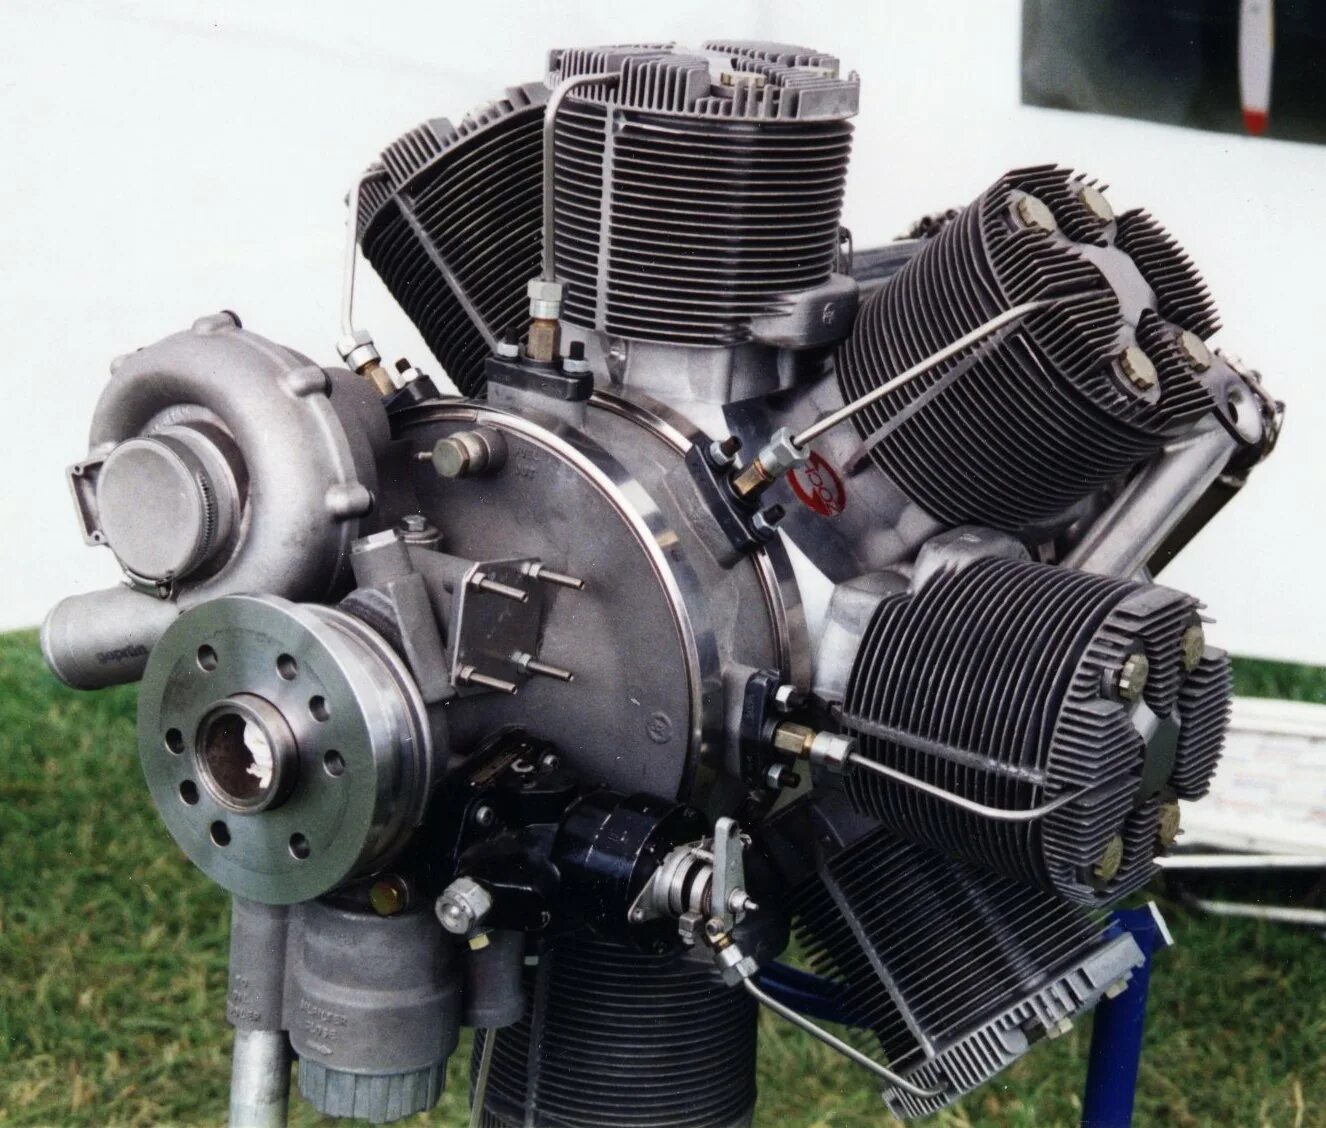 Гомель купить двигатель. Двухтактный авиадизель м-305. Pratt & Whitney r5600 XBSAP. 56 Цилиндровый. DELTAHAWK Diesel aircraft engines. Анзани авиадвигатель.